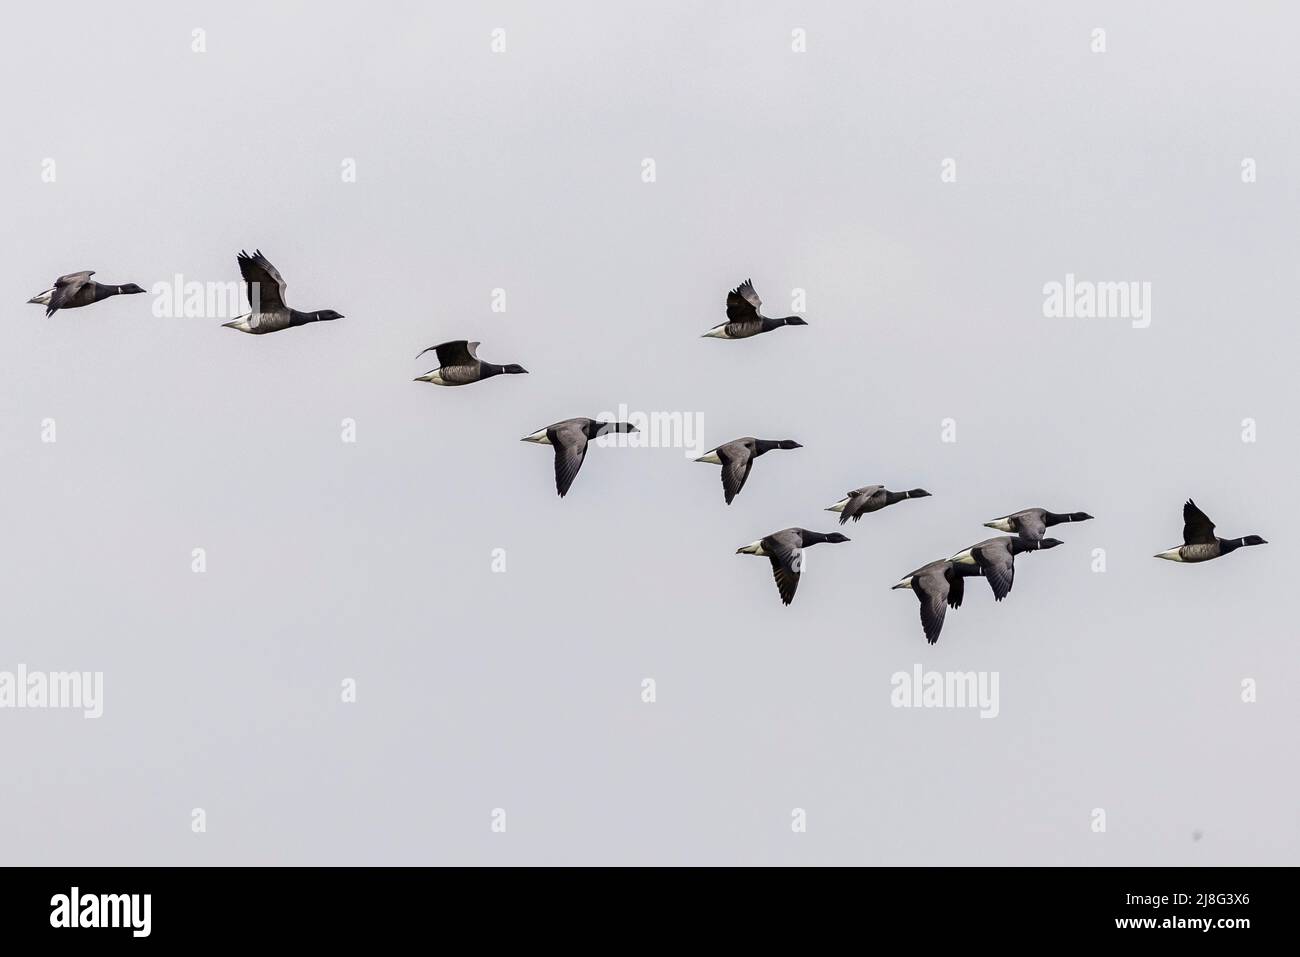 Brent goose (Branta bernicla) in flight Stock Photo